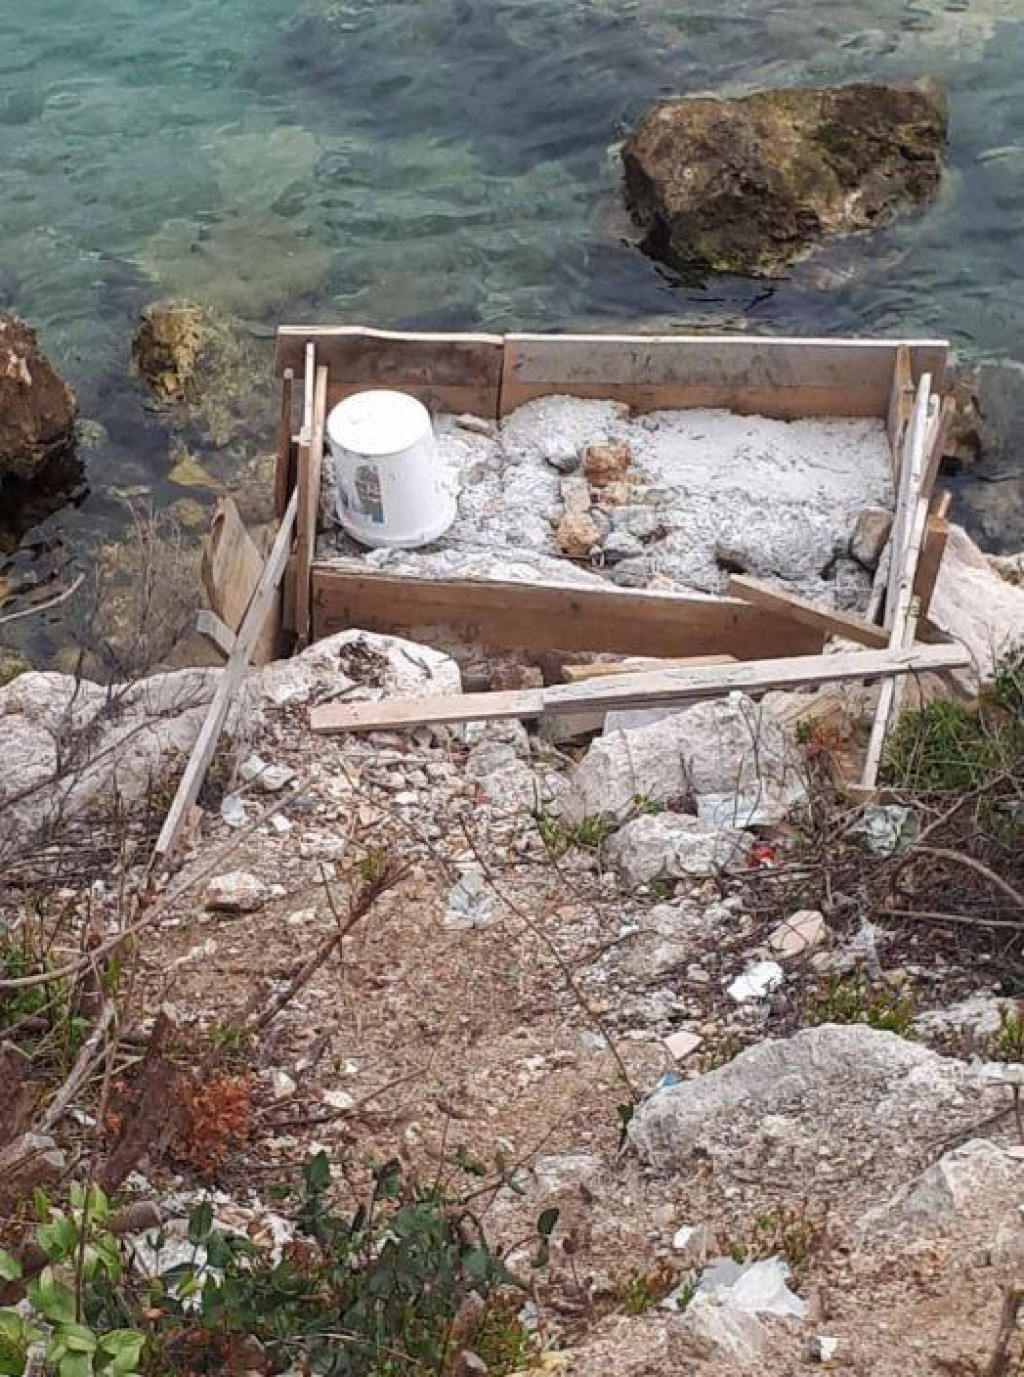 Gradski vijećnik Maro Kristić osvrnuo se na stanje javnog pomorskog dobra u Rijeci dubrovačkoj